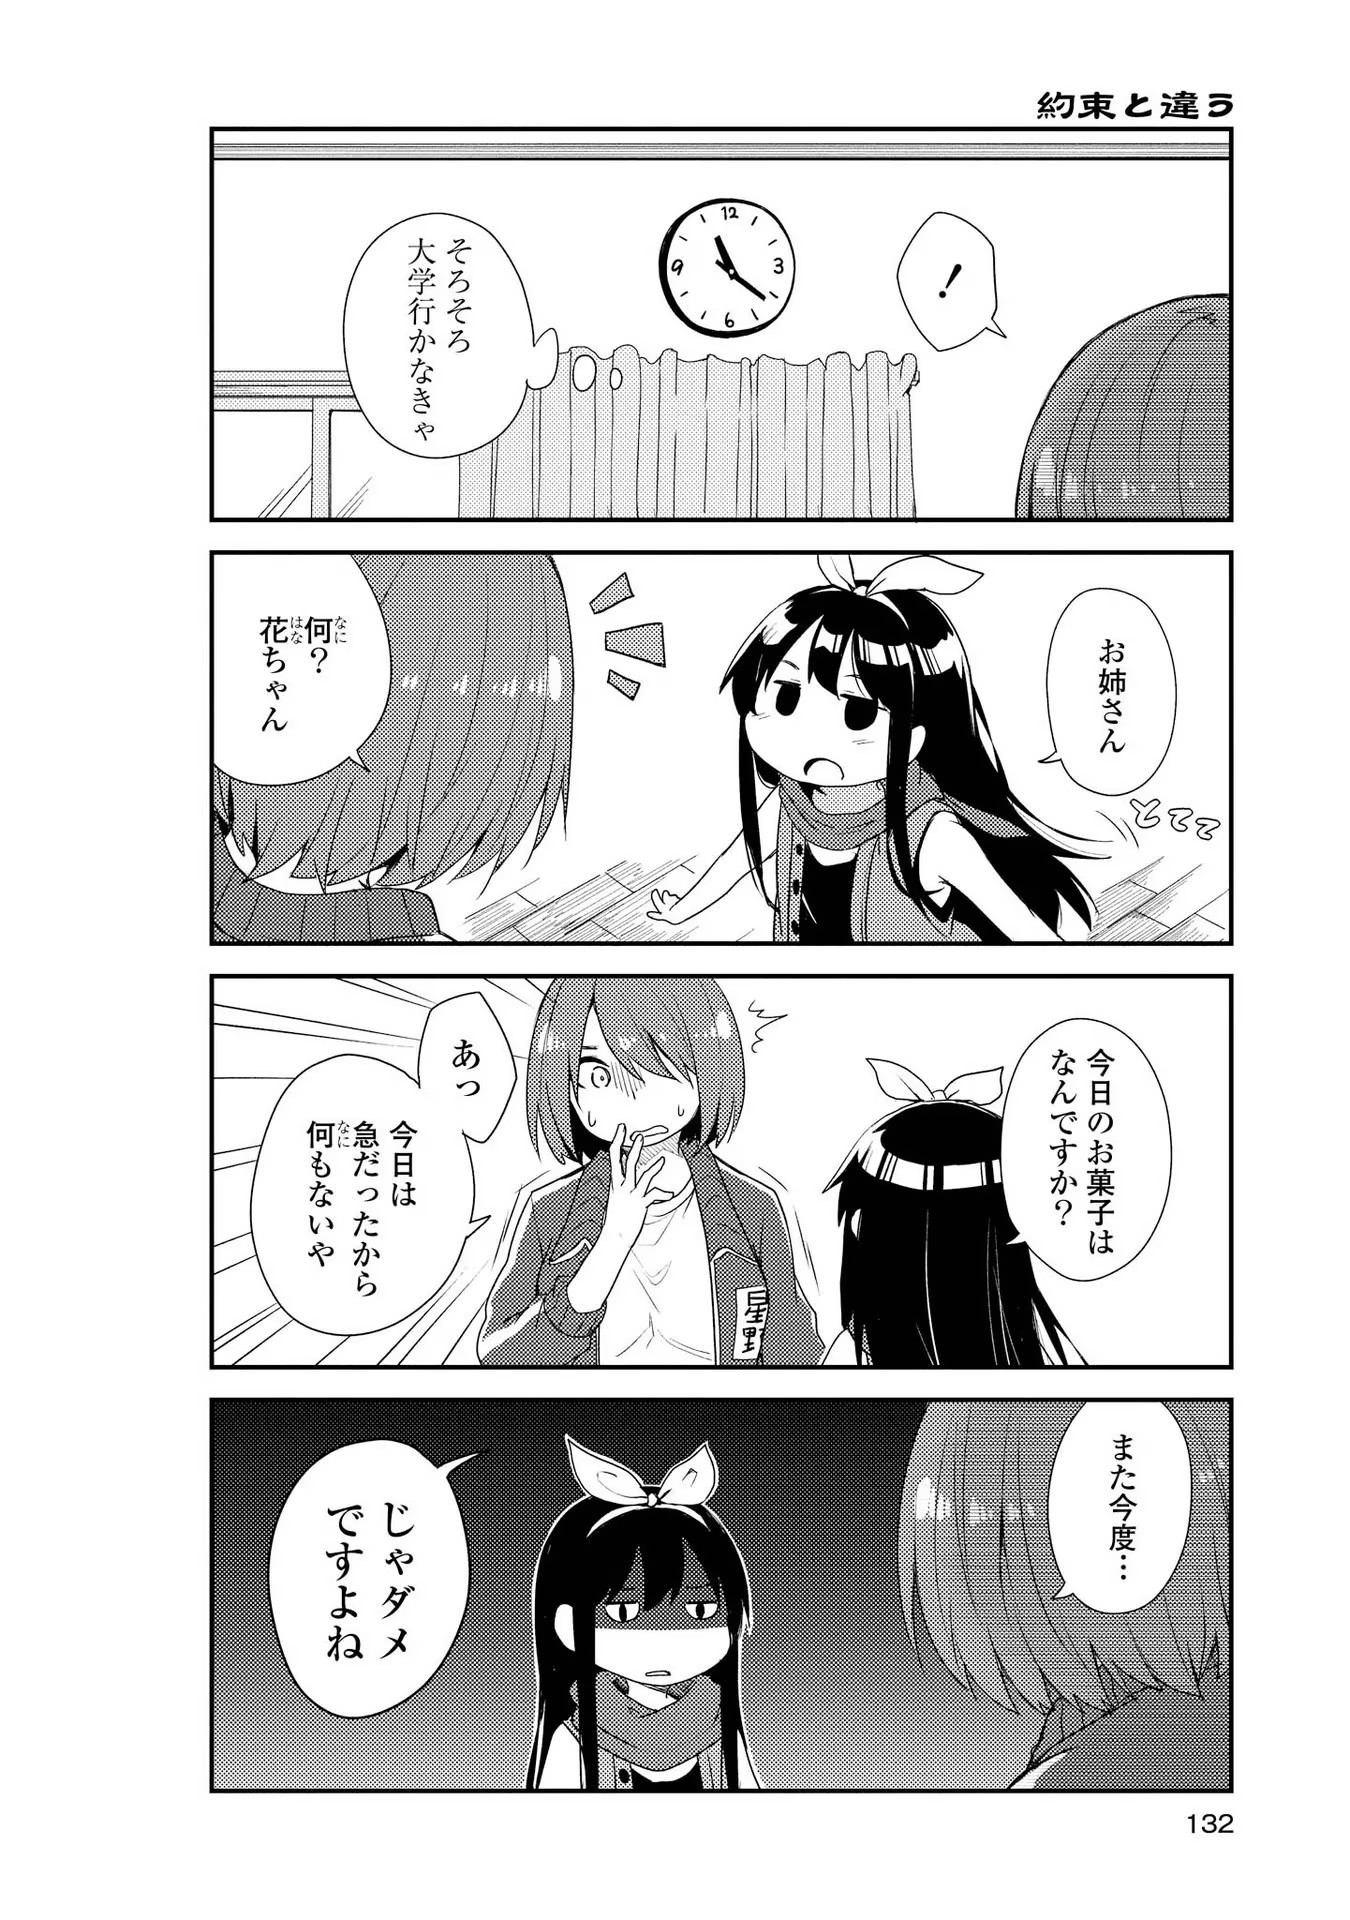 Watashi ni Tenshi ga Maiorita! - Chapter 9 - Page 4